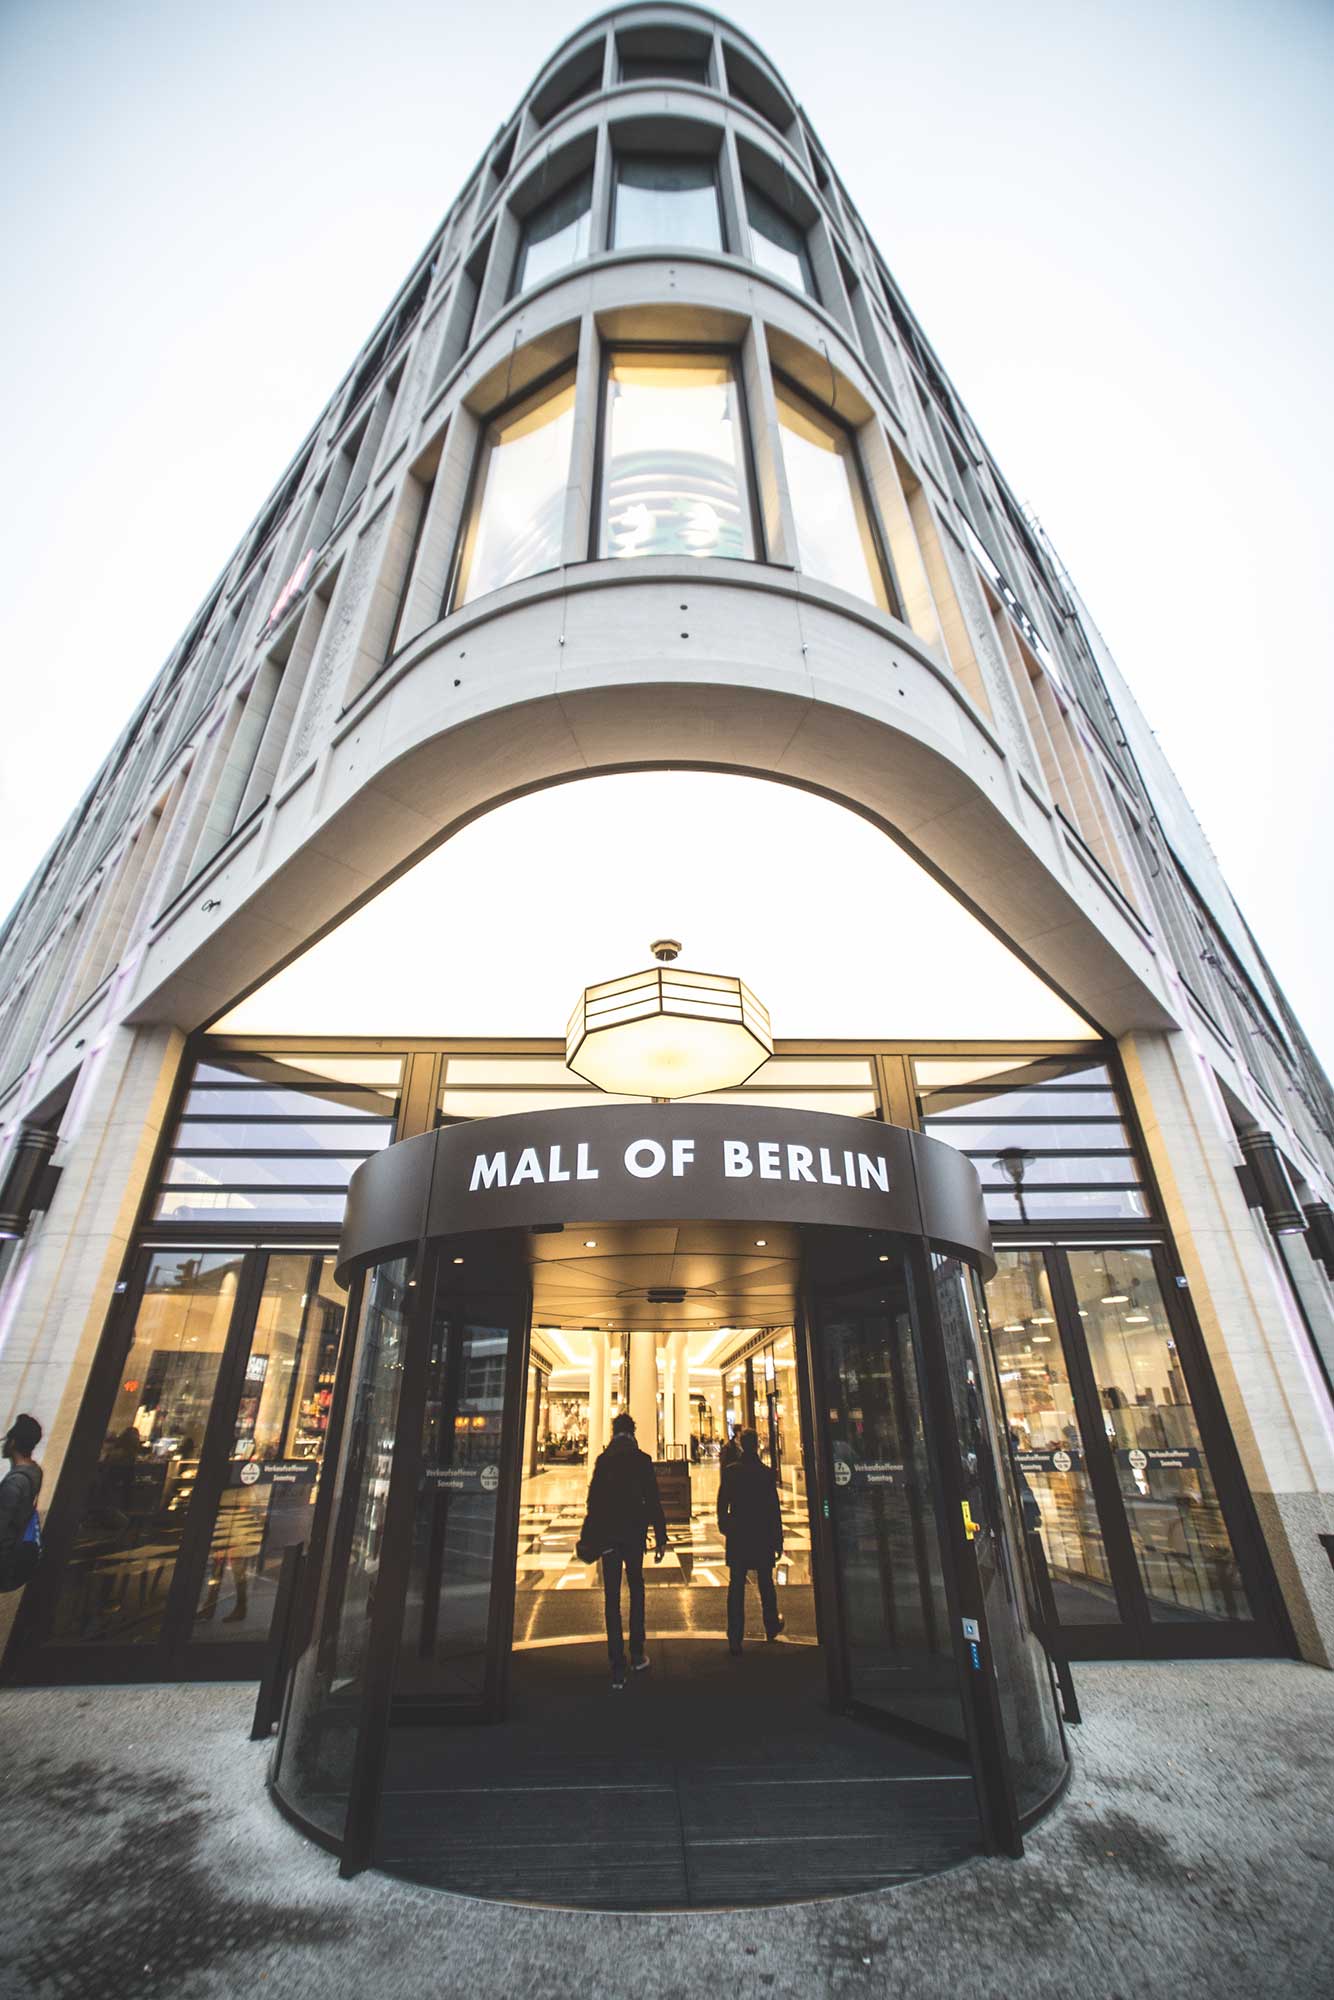 Mall of Berlin ein Projekt der HGHI Holding GmbH